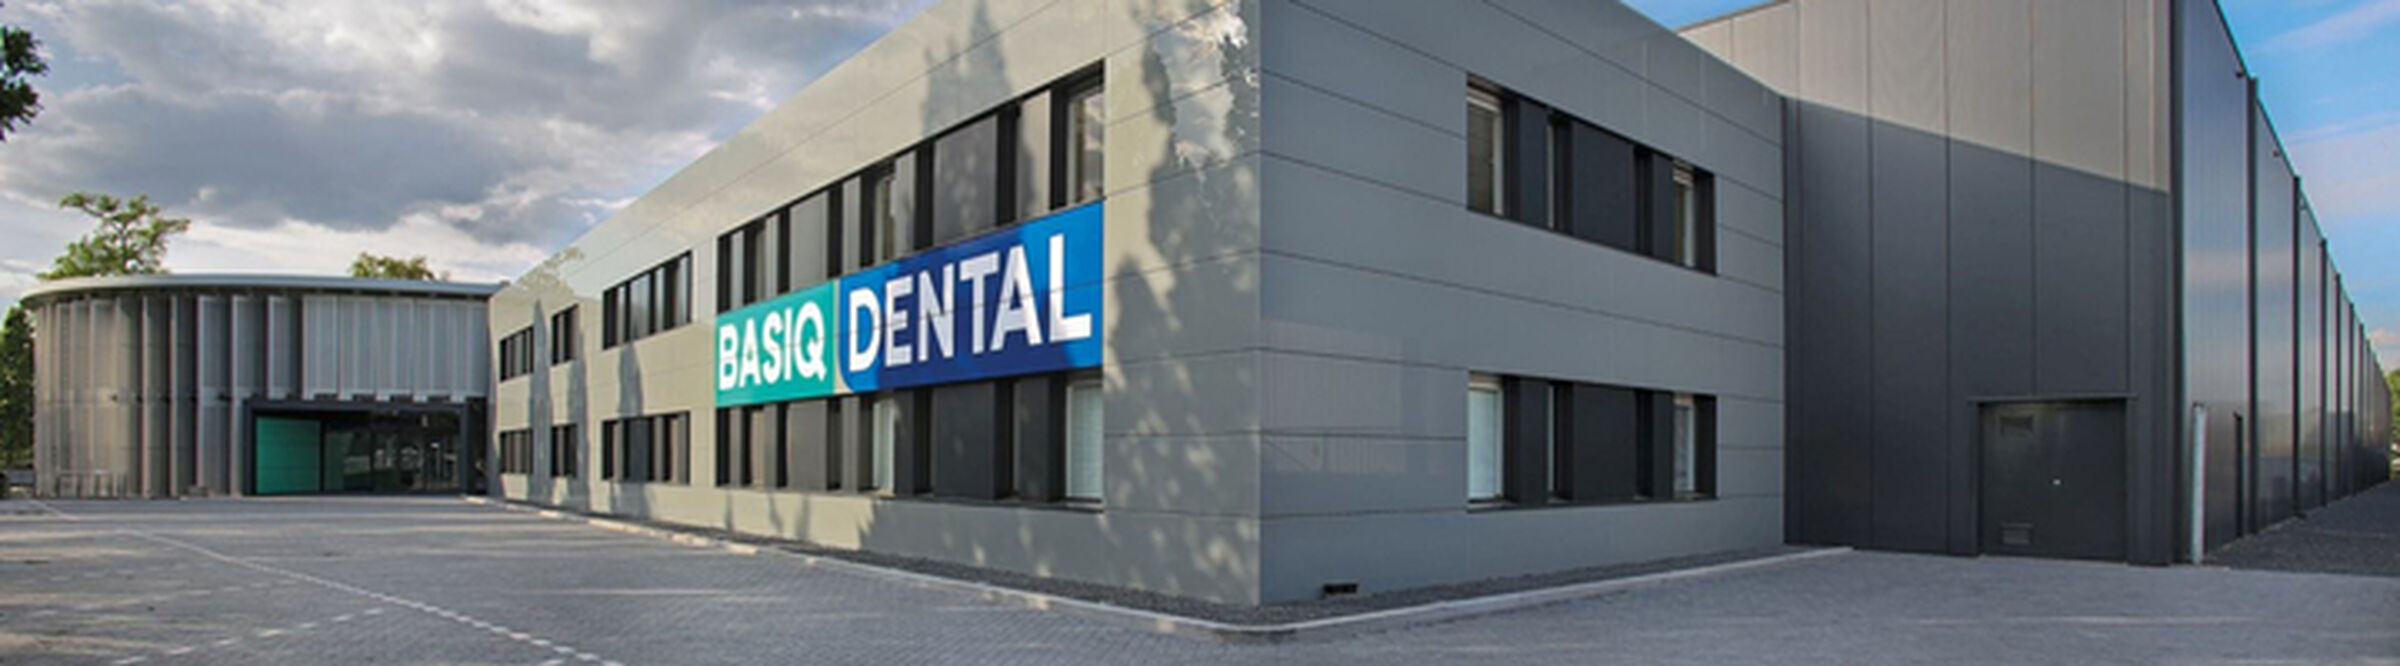 Basiq Dental HQ 1